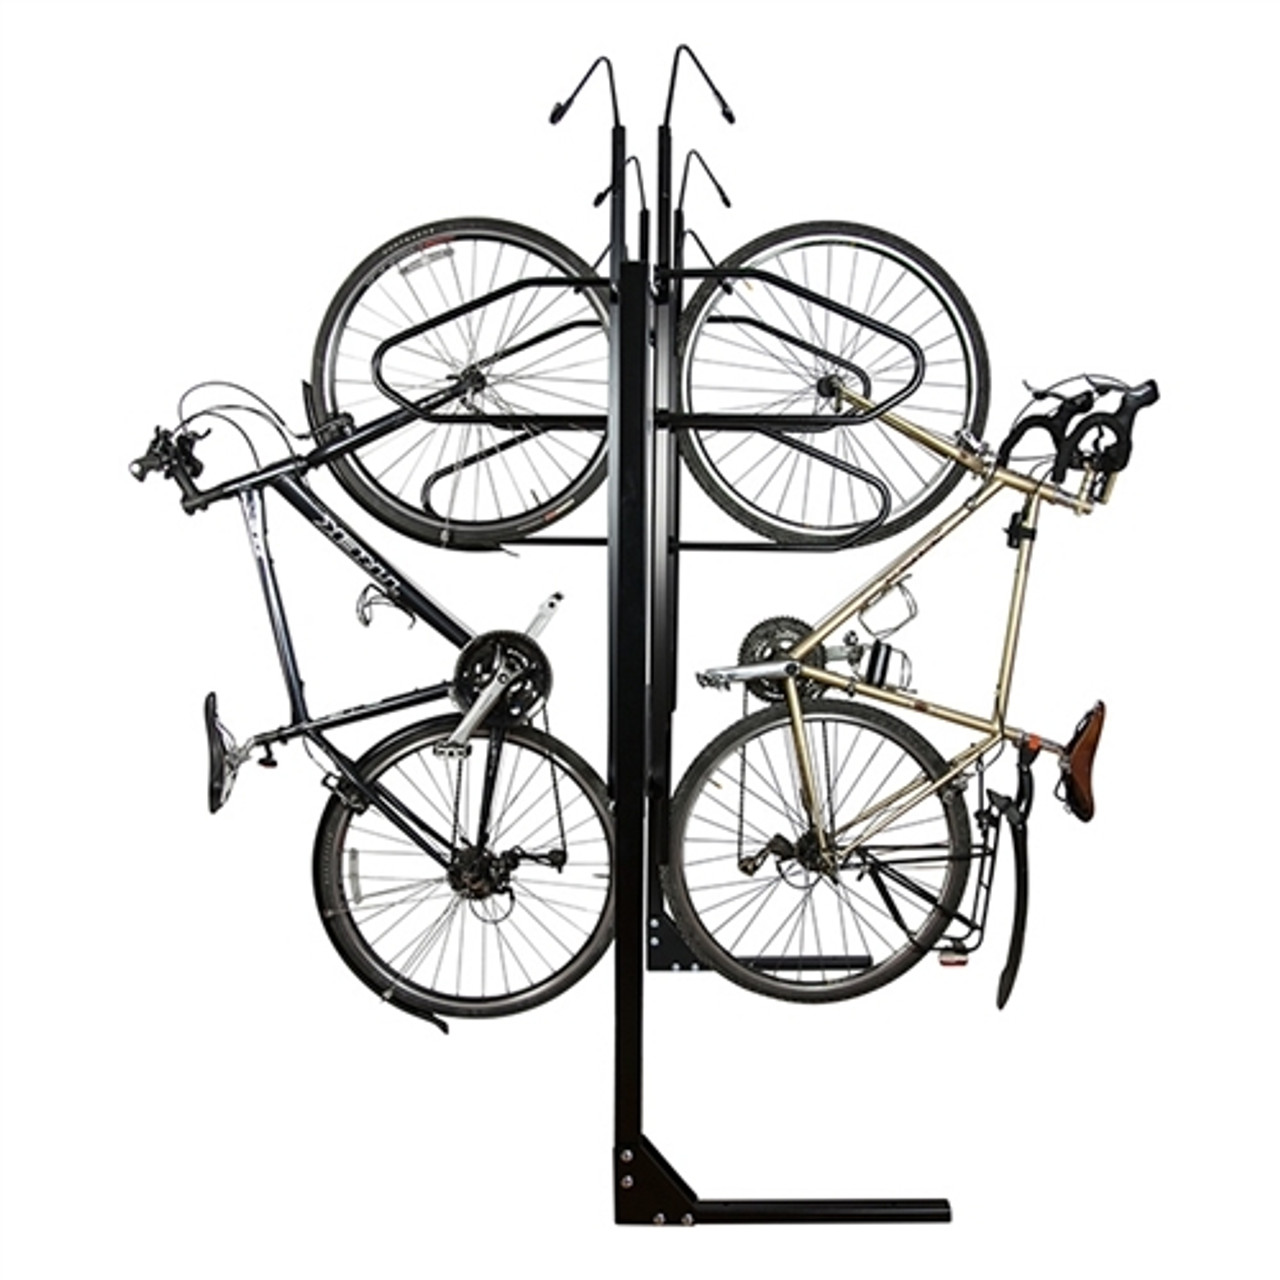 6 Bike double sided non locking bike rack